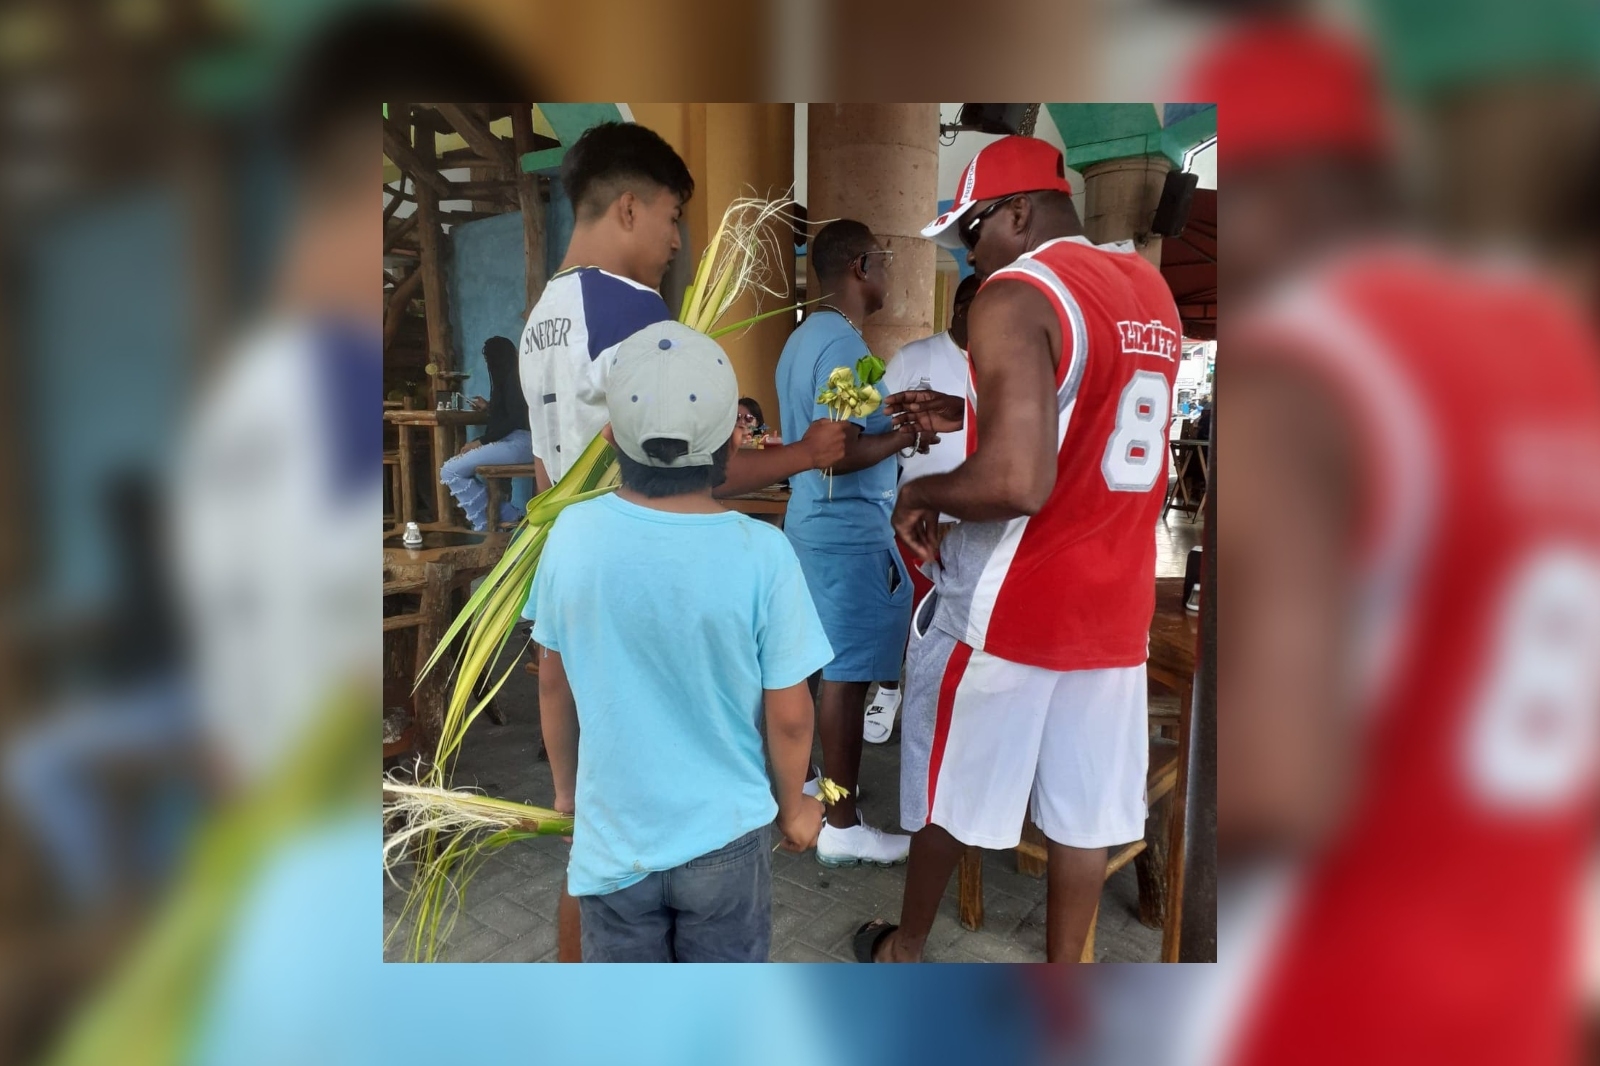 Los menores de edad son vistos en diversas partes turísticas de Cozumel, en búsqueda de turistas para intentar venderle sus manualidades